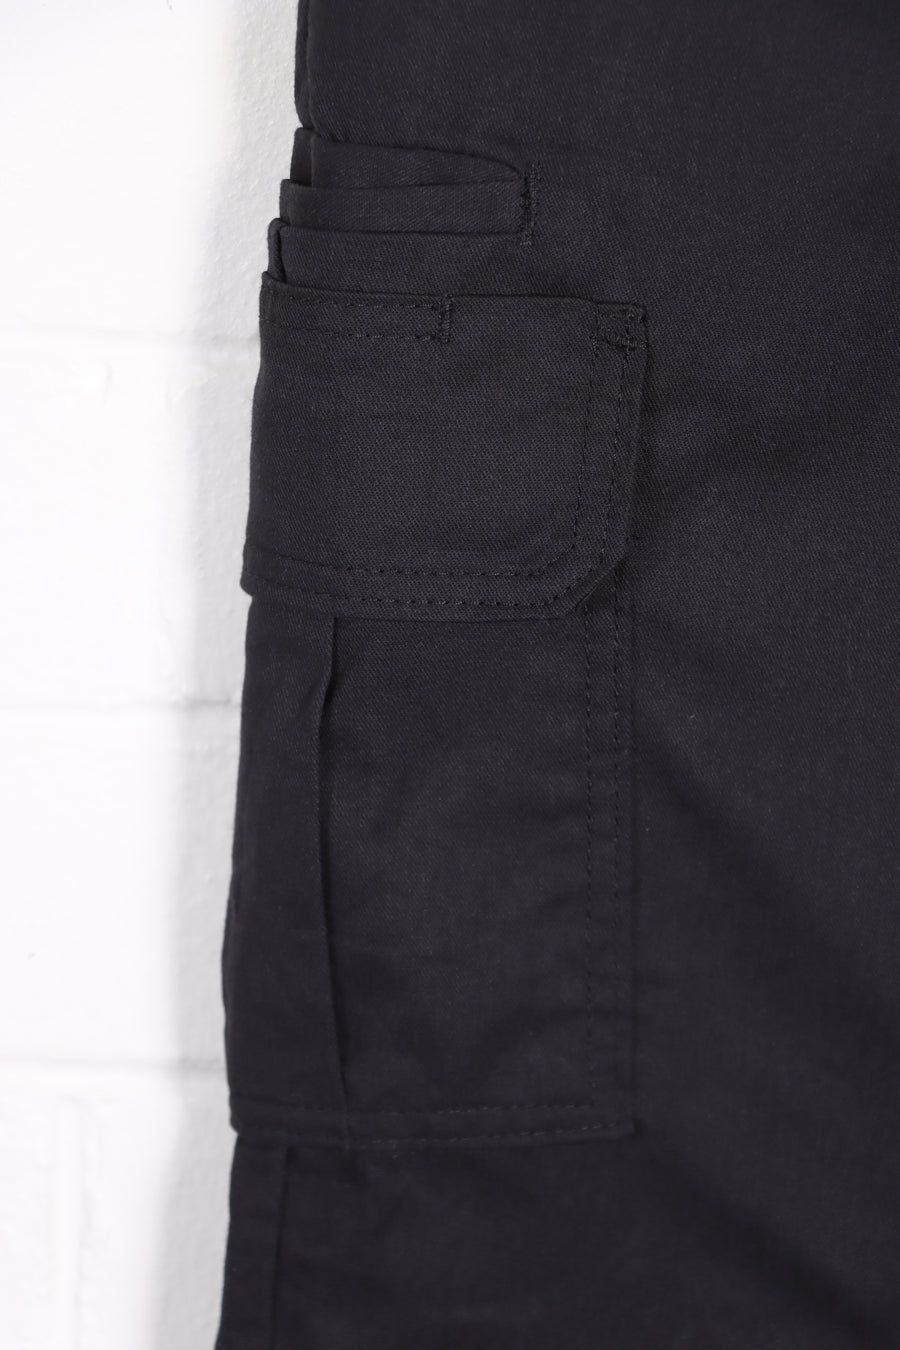 DICKIES Vintage 'Regular Straight' Black Workwear Pants (32 x 30) - Vintage Sole Melbourne